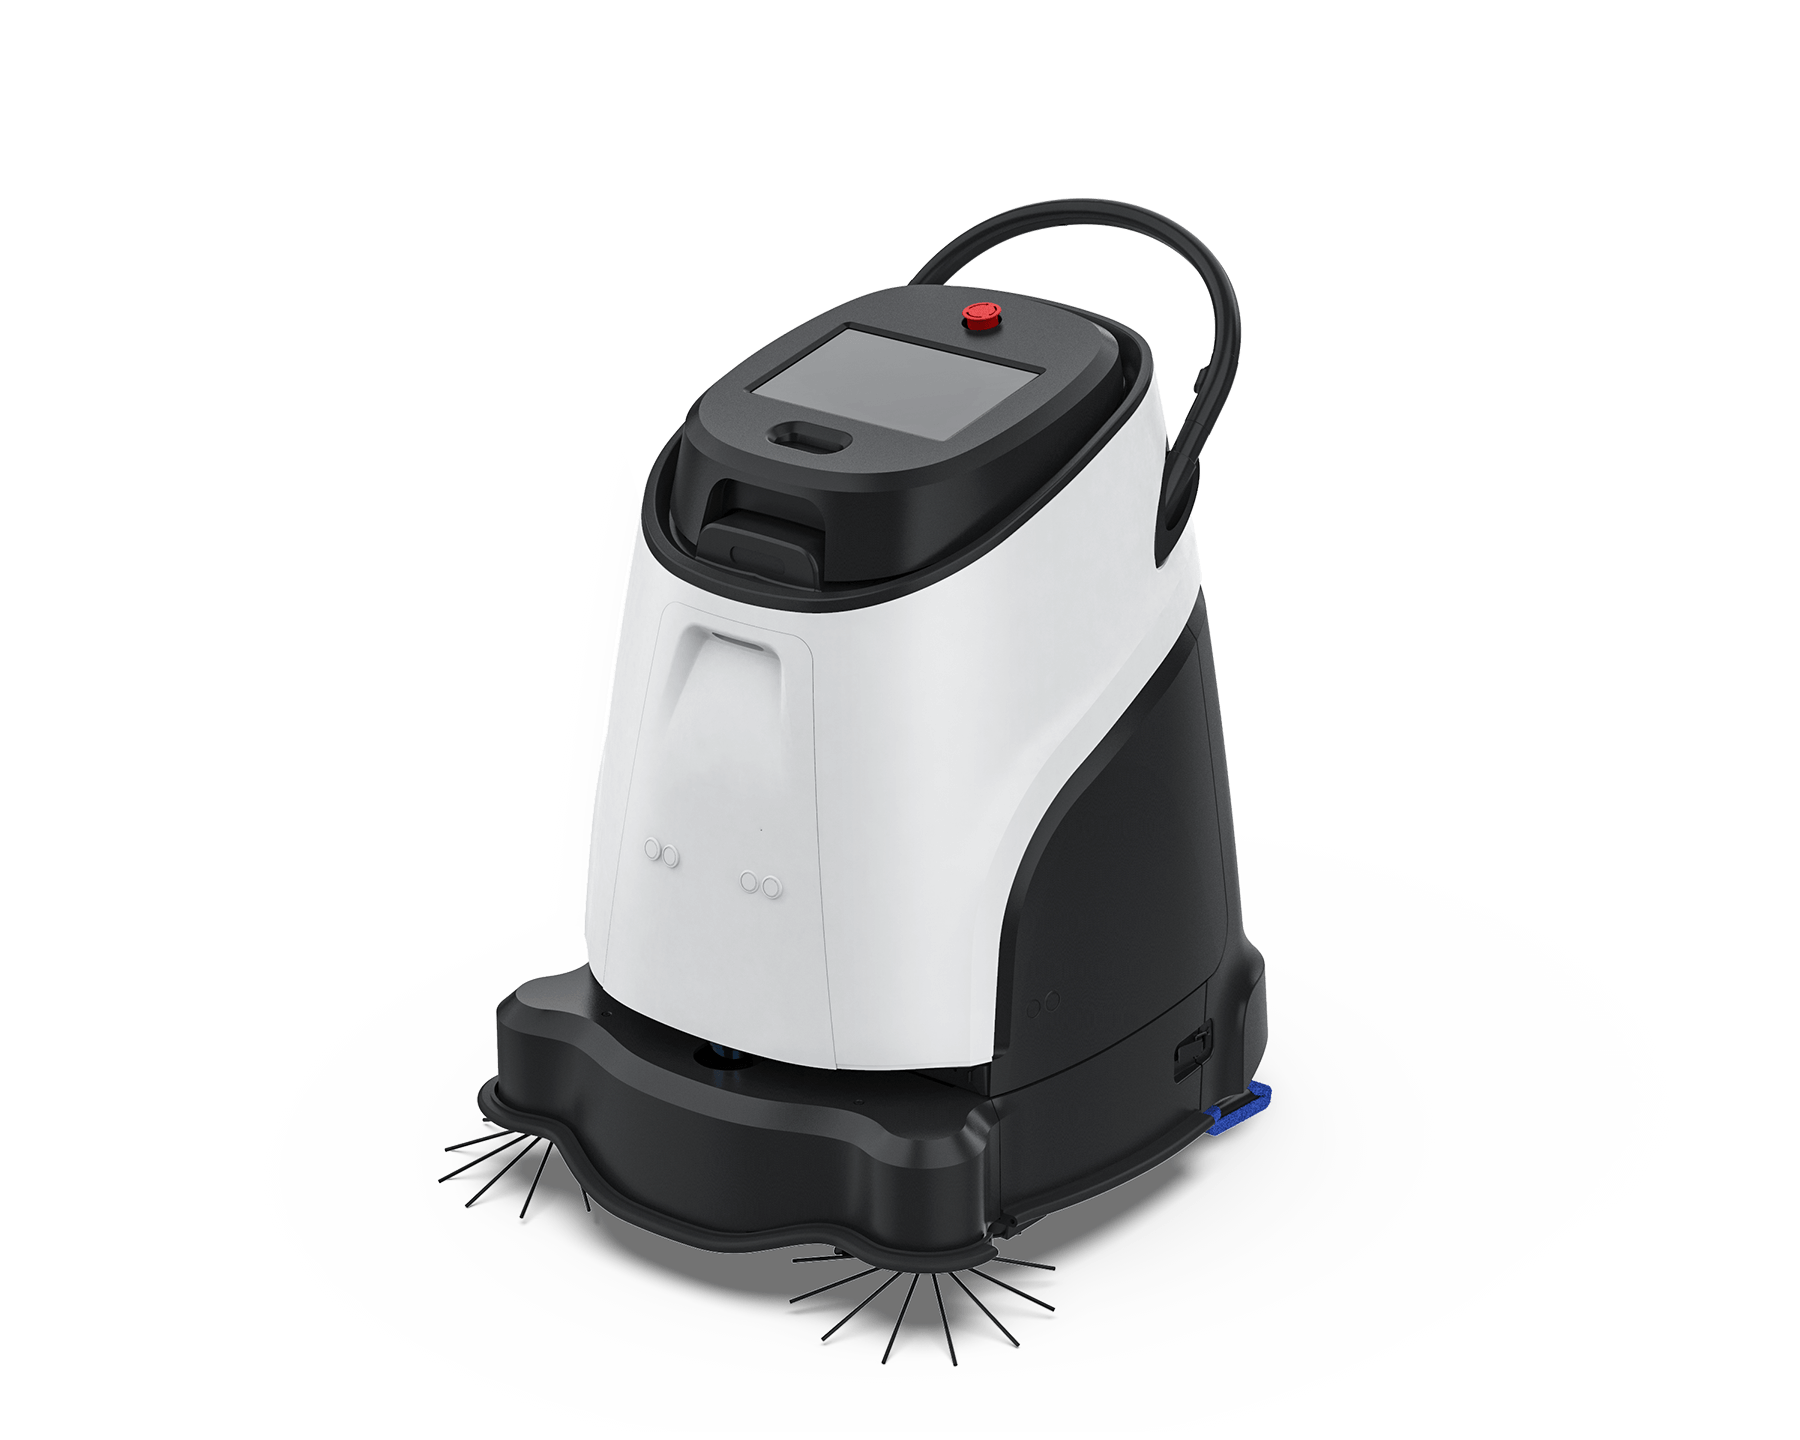 Vacuum 40 Pro Staubsaugroboter Staub saugen autonom Professionell reinigen automatisch